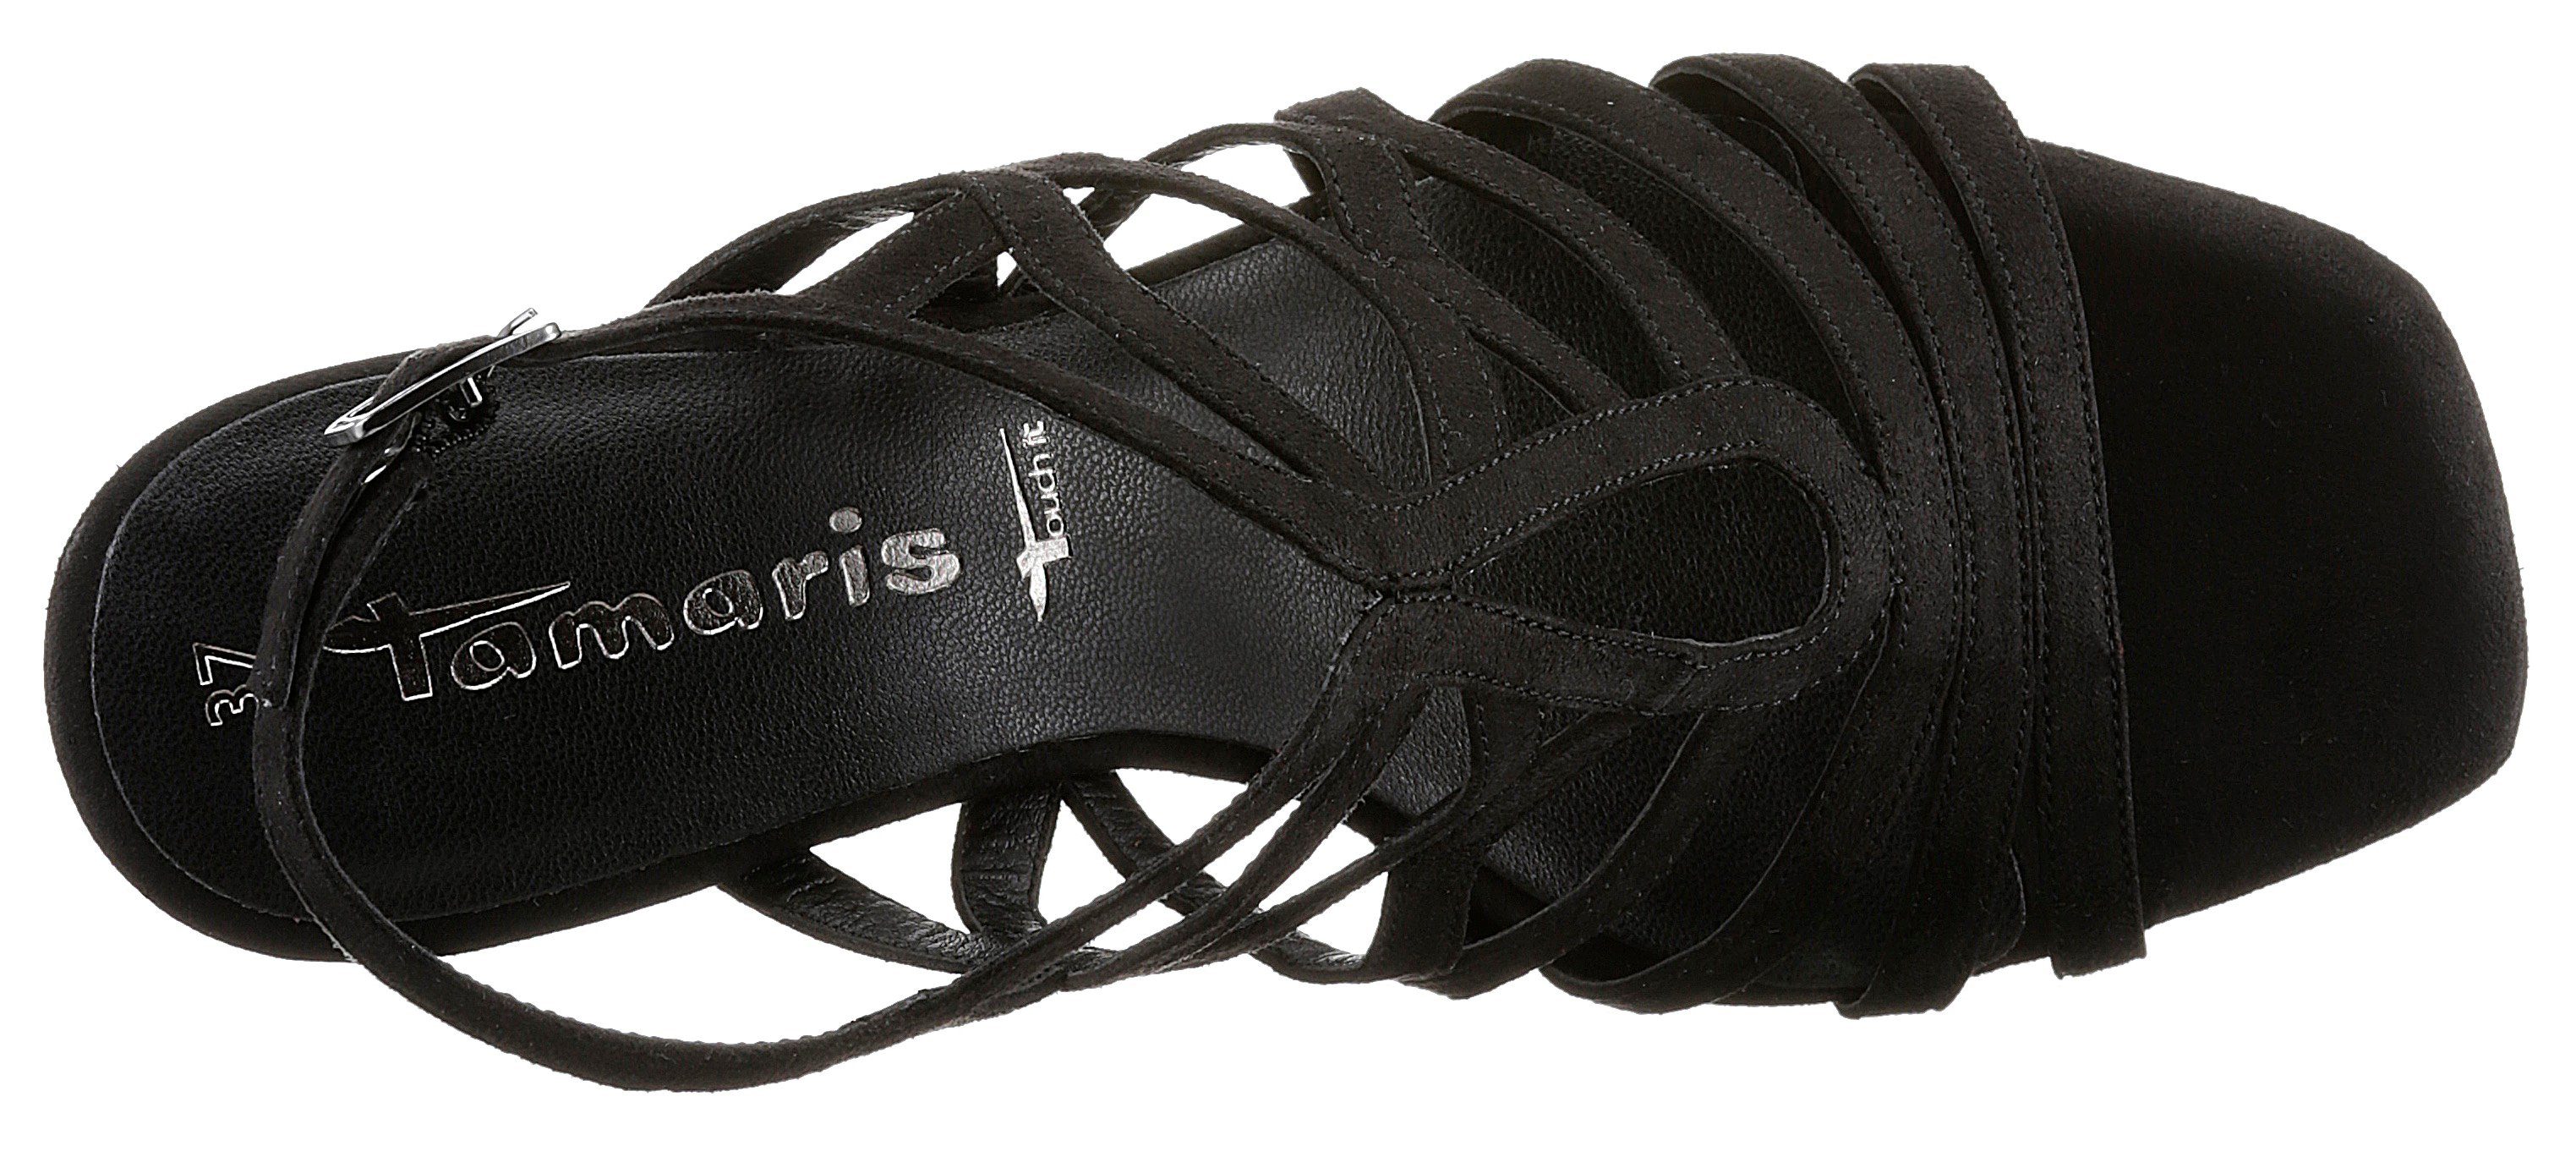 Karreeform modischer Tamaris schwarz High-Heel-Sandalette mit